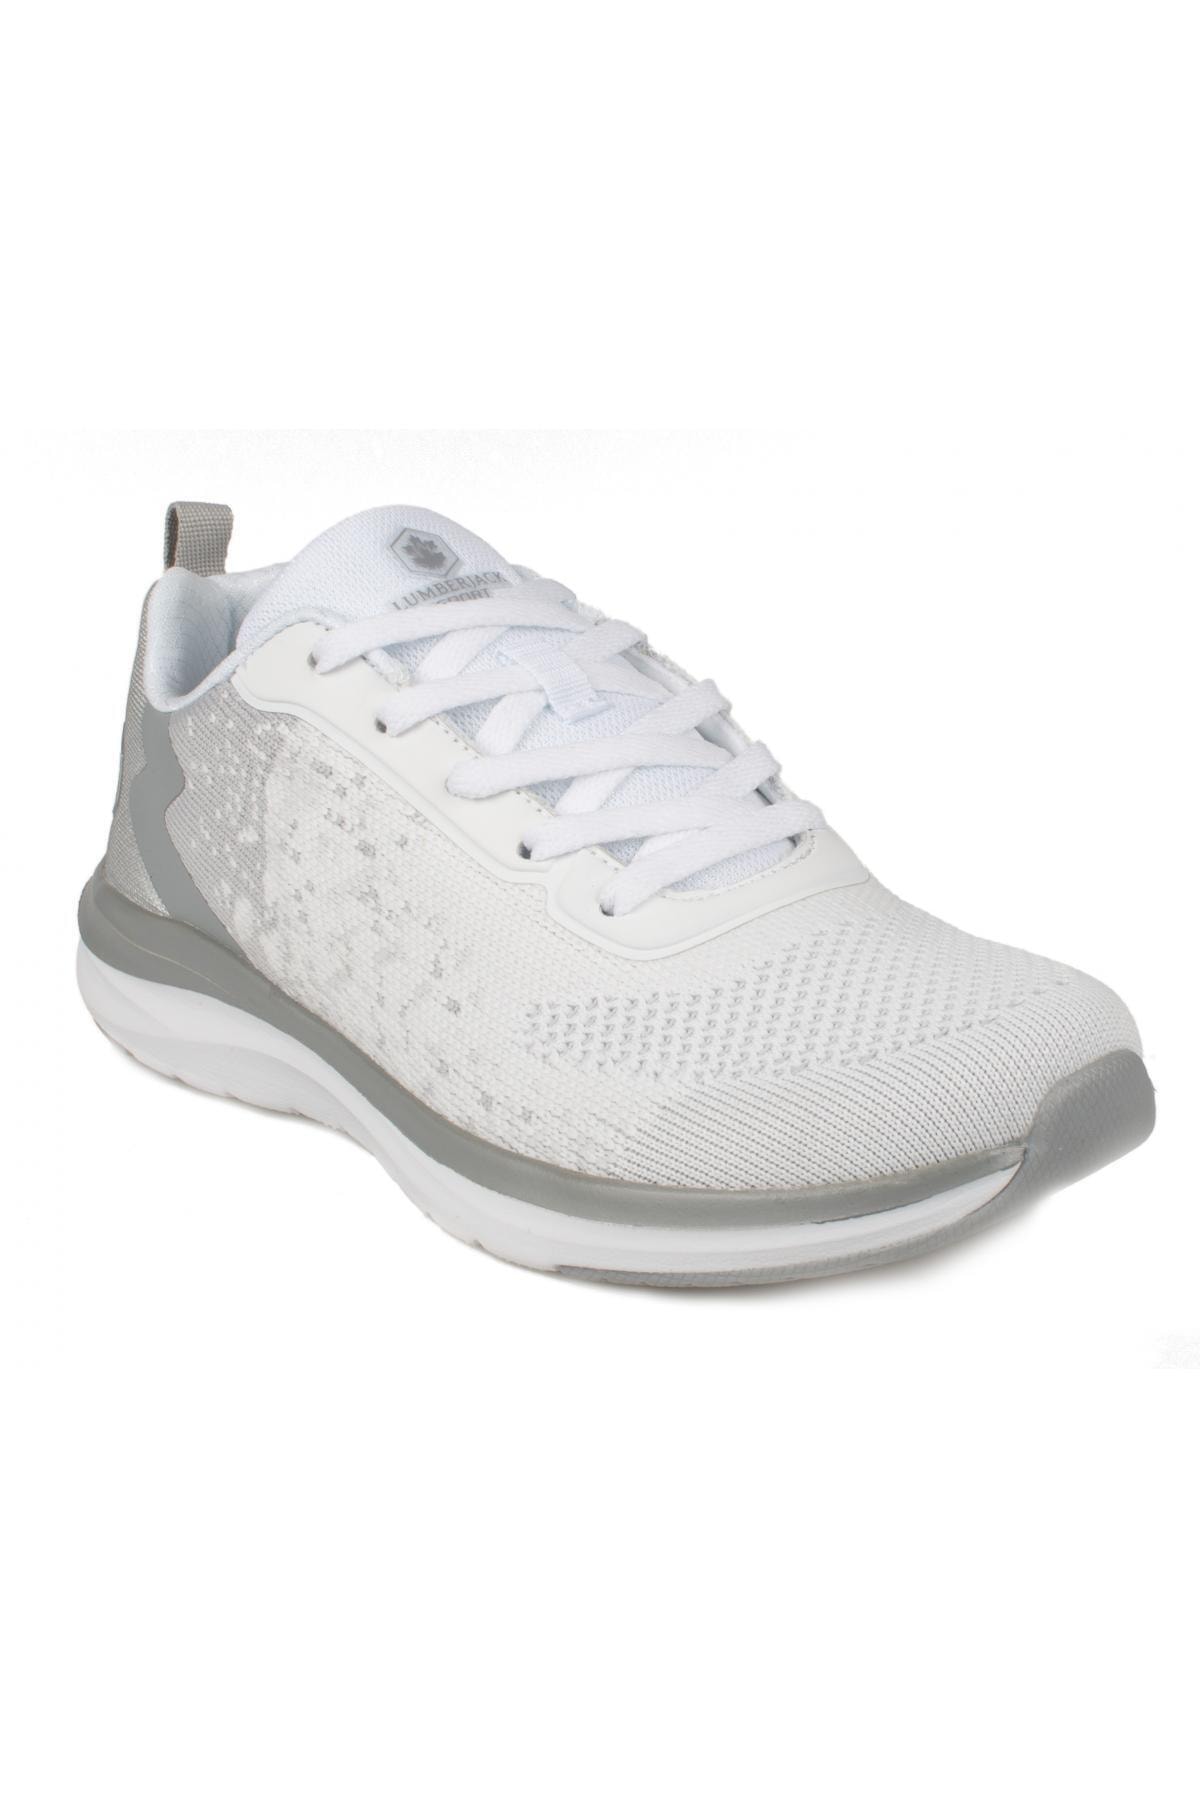 PELINA Beyaz Kadın Comfort Ayakkabı 100604000